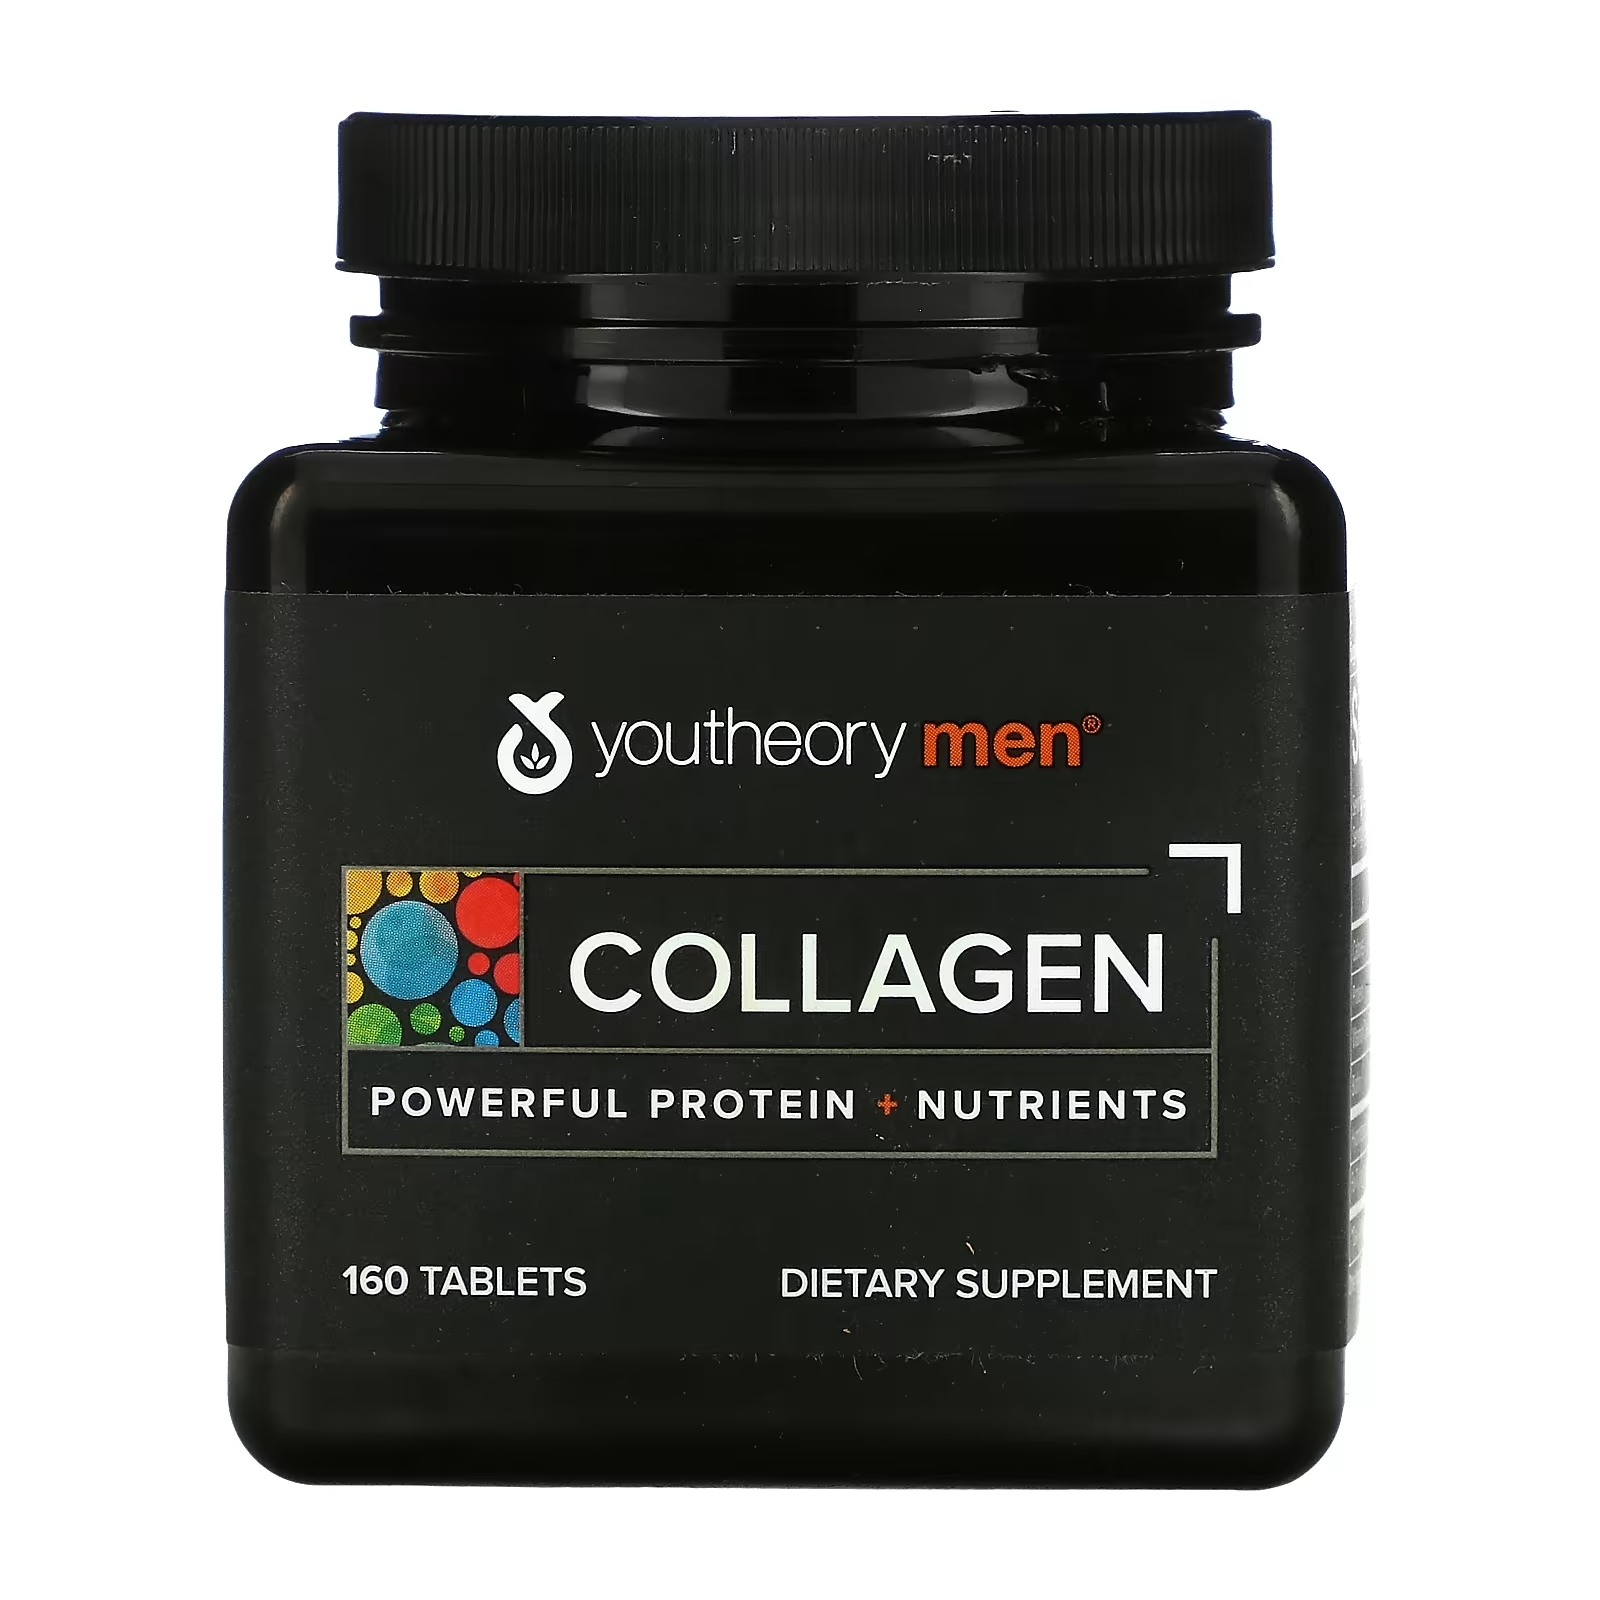 Youtheory Мужчины Коллаген, 160 таблеток коллаген youtheory для мужчин 160 таблеток